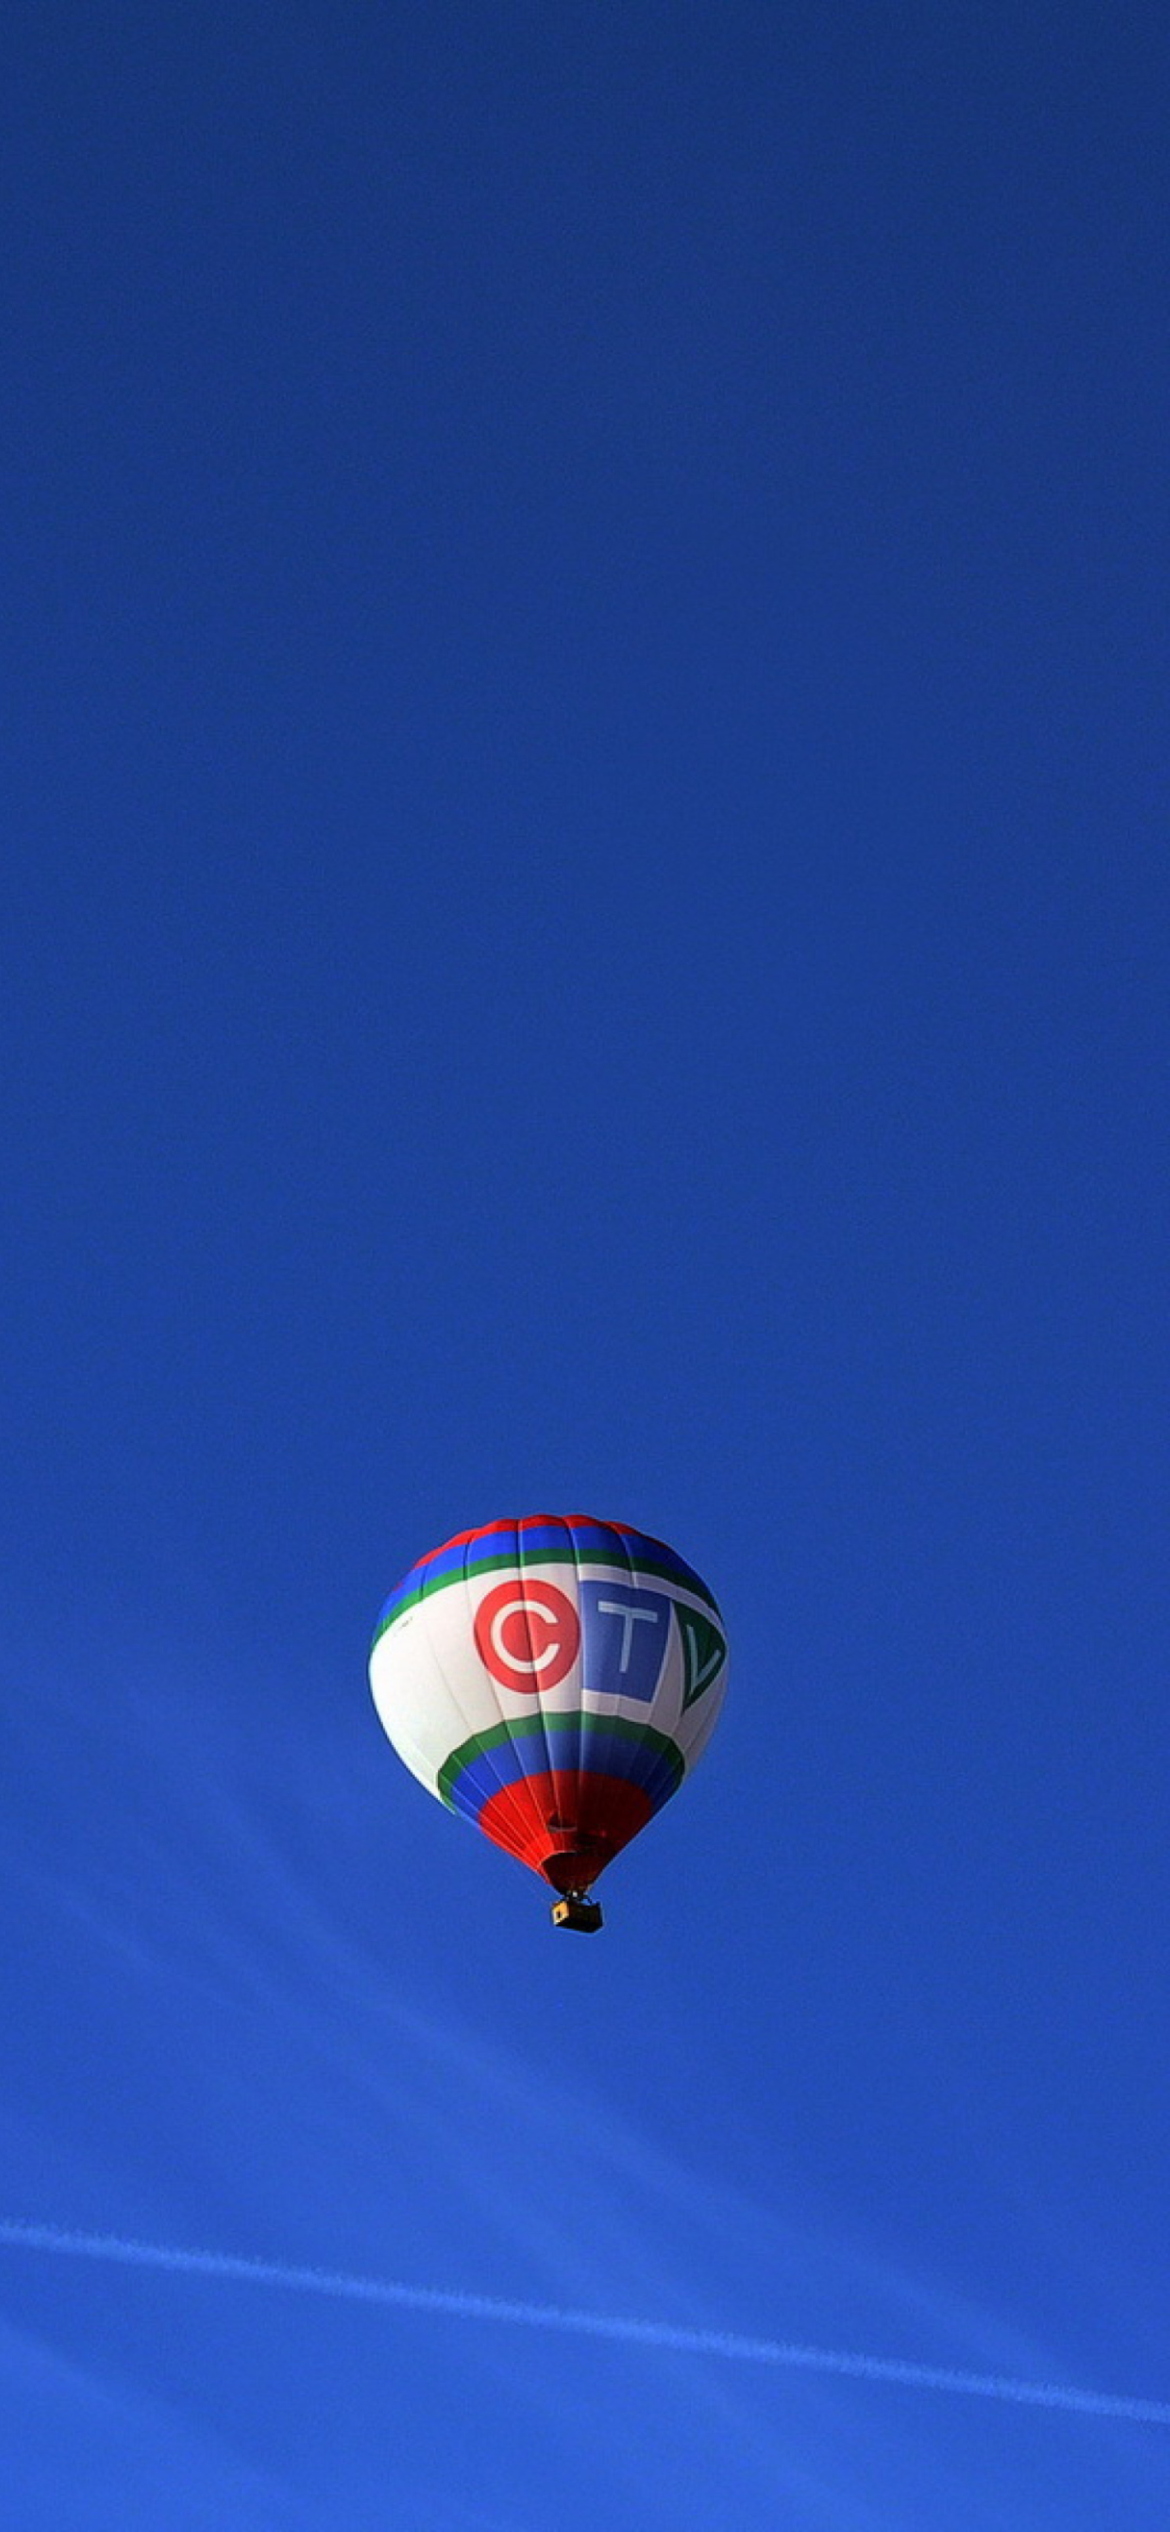 Обои Balloon In Blue Sky 1170x2532